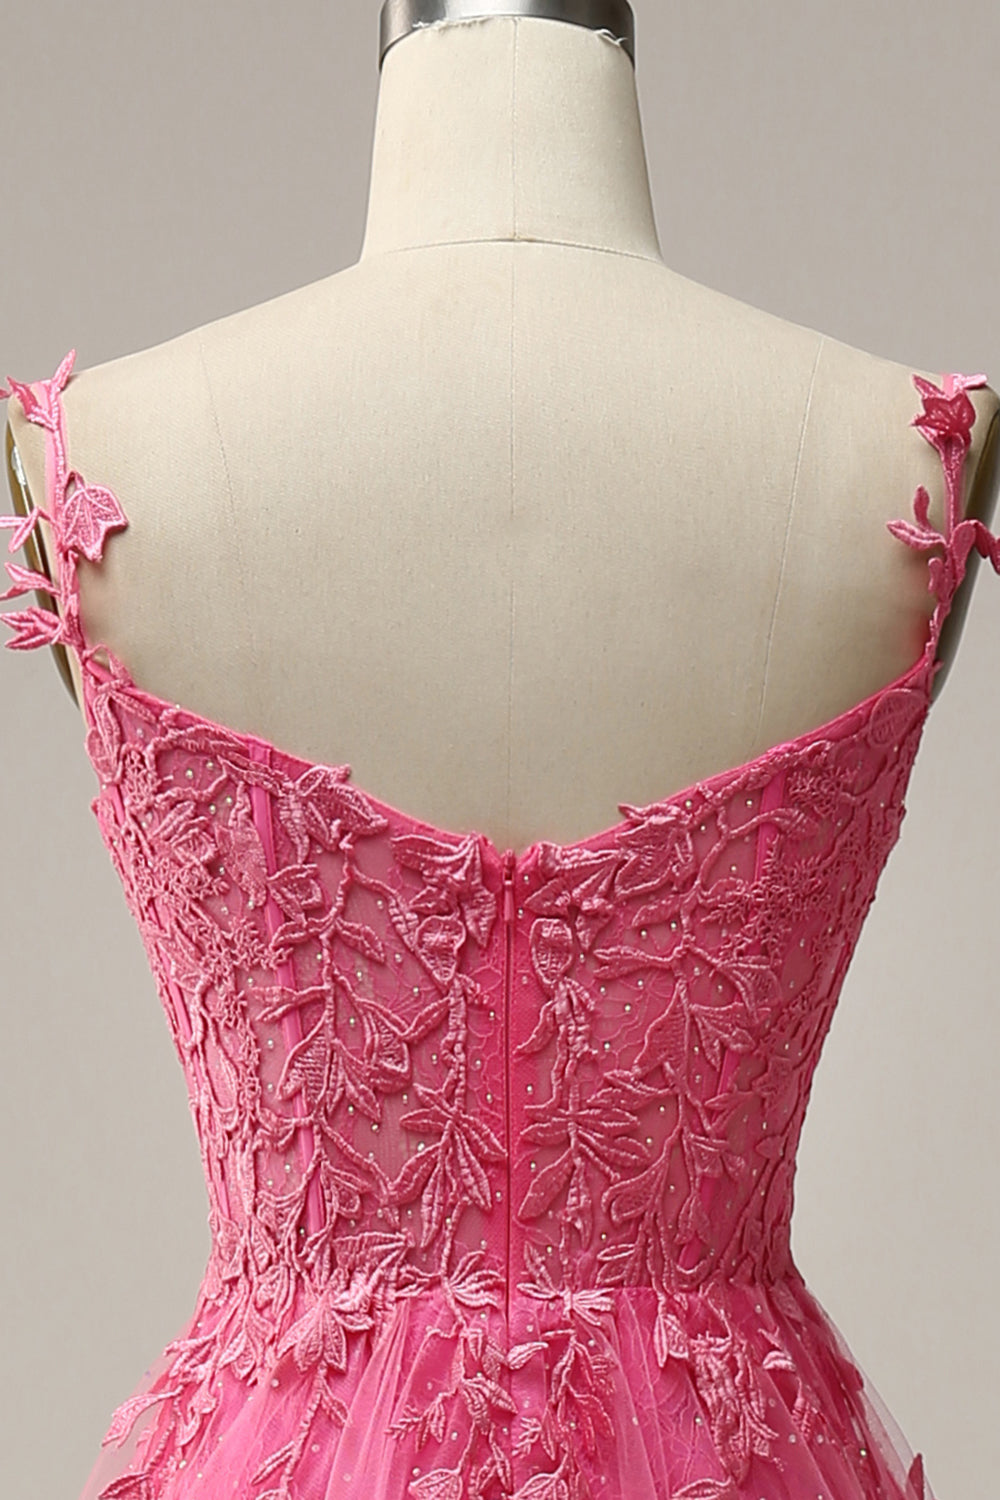 Zapakasa Women Hot Pink Prom Dress A Line Spaghetti Straps Party Dress ...